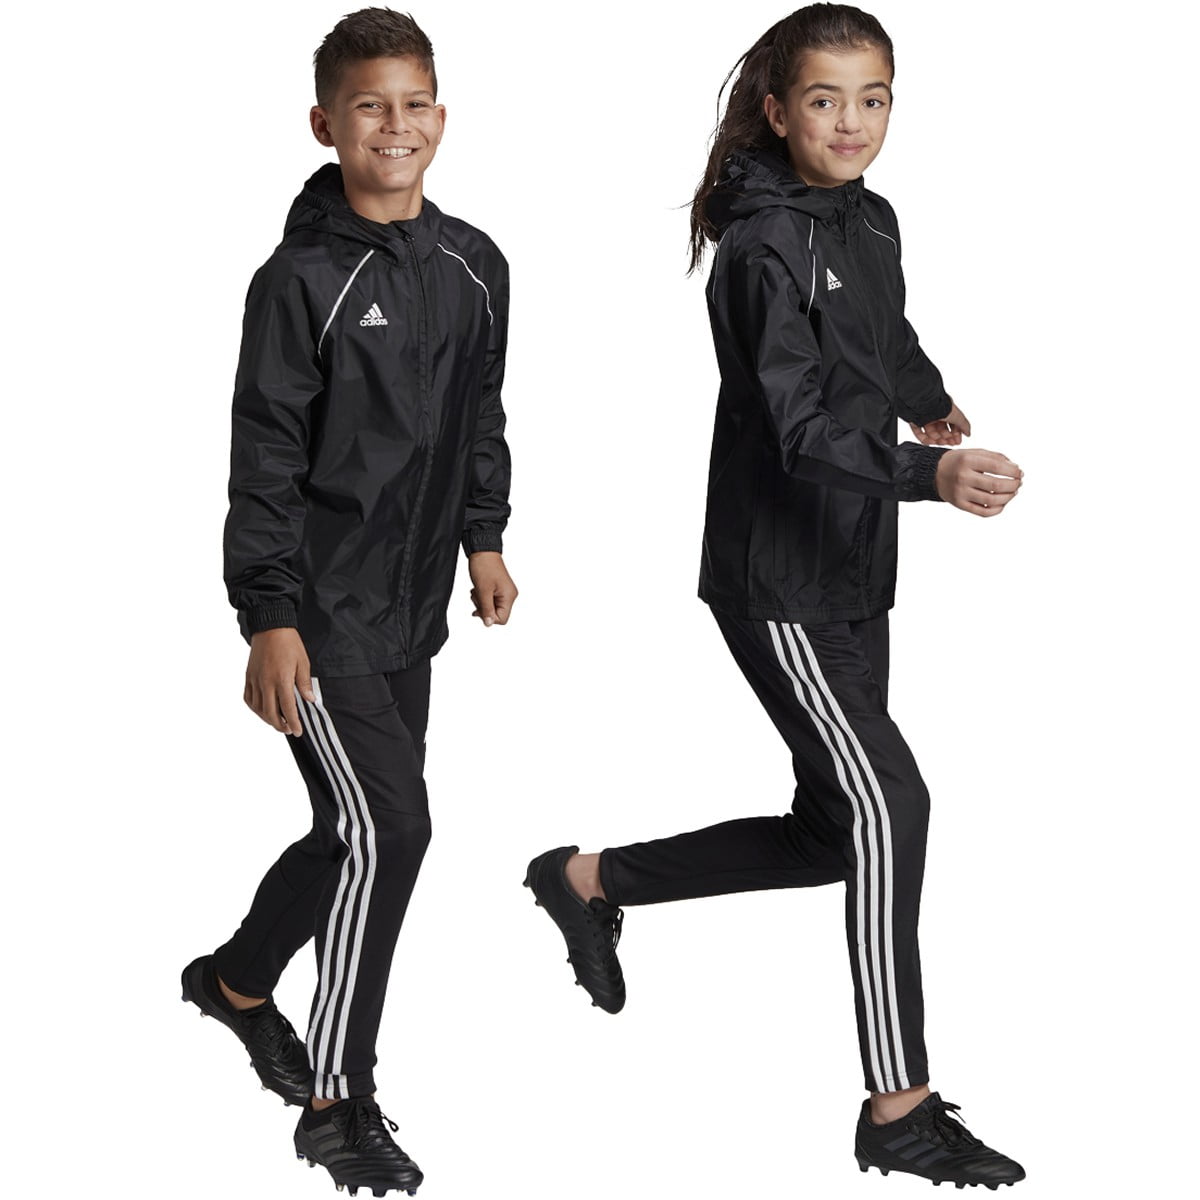 adidas soccer pants and jacket